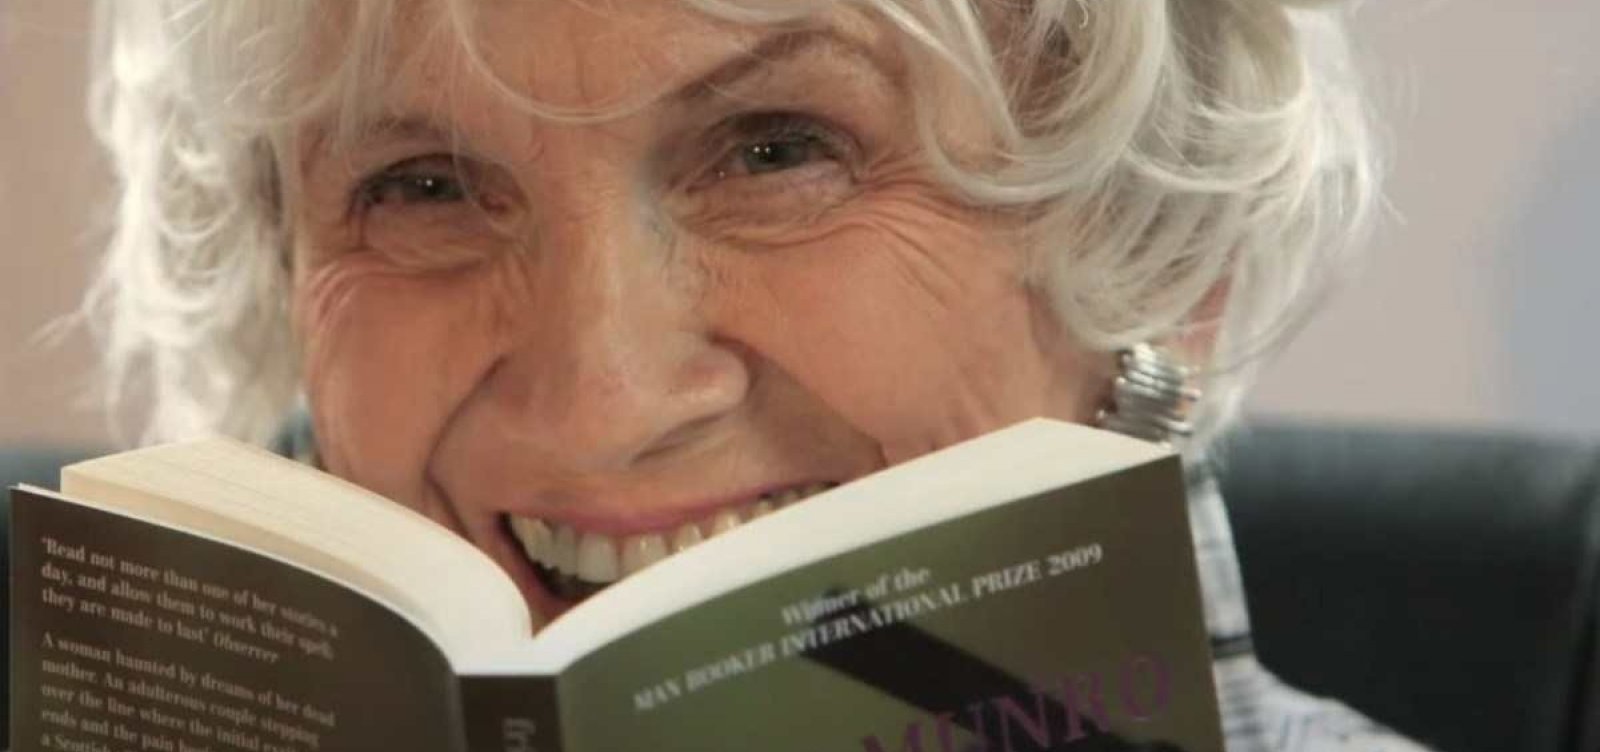 Aos 92 anos, morre Alice Munro, escritora canadense vencedora do Nobel de Literatura